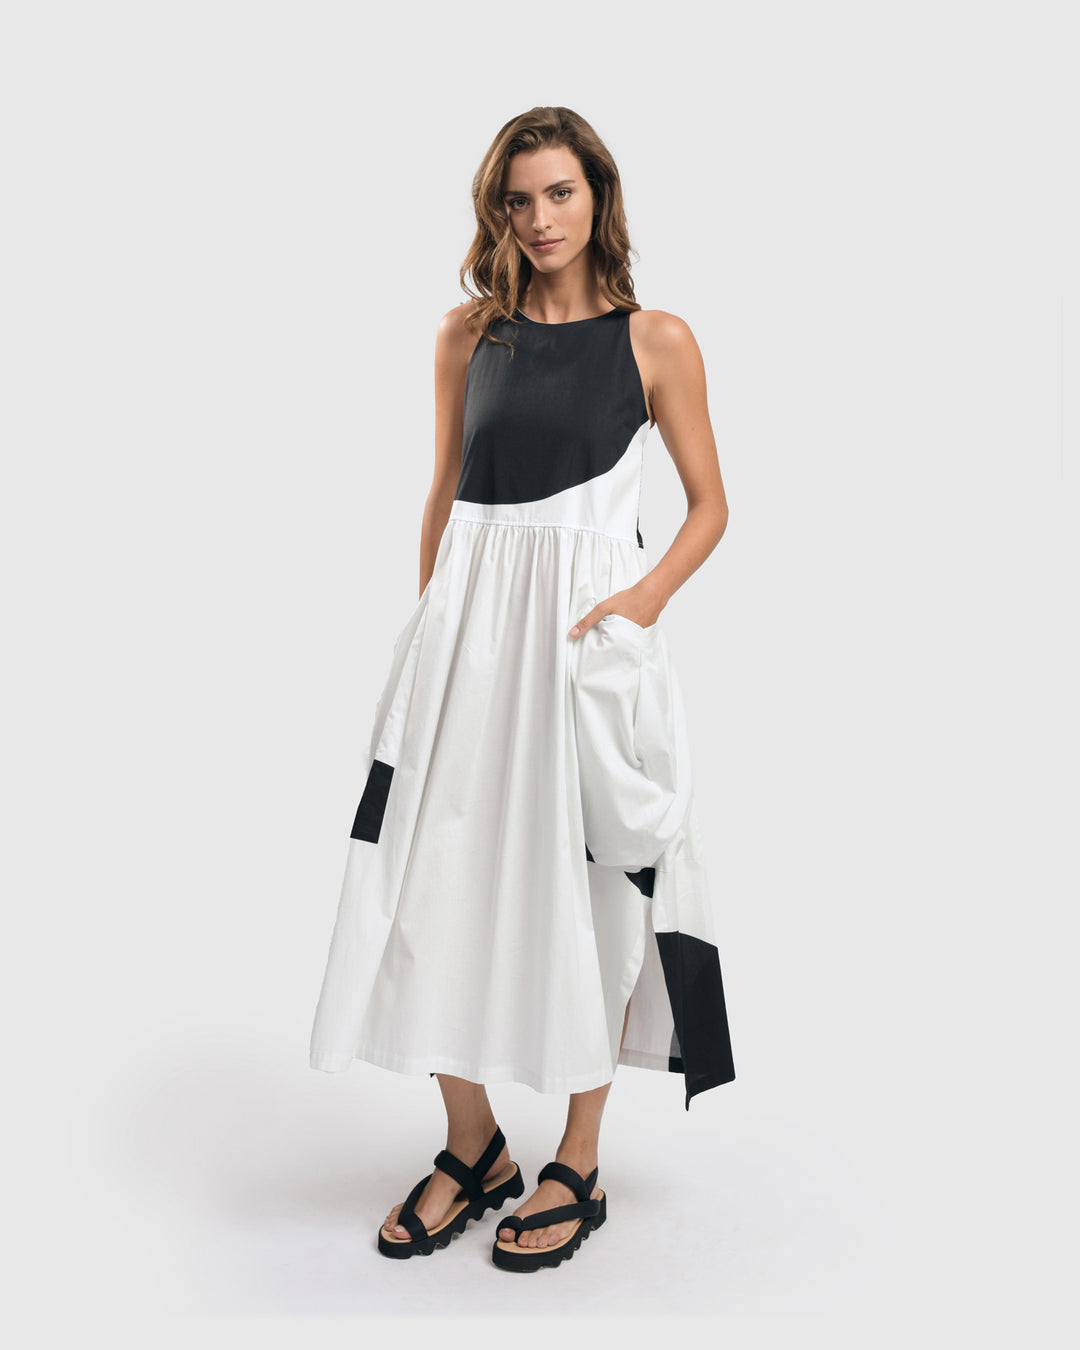 Urban Harper Pocket Dress, White/black